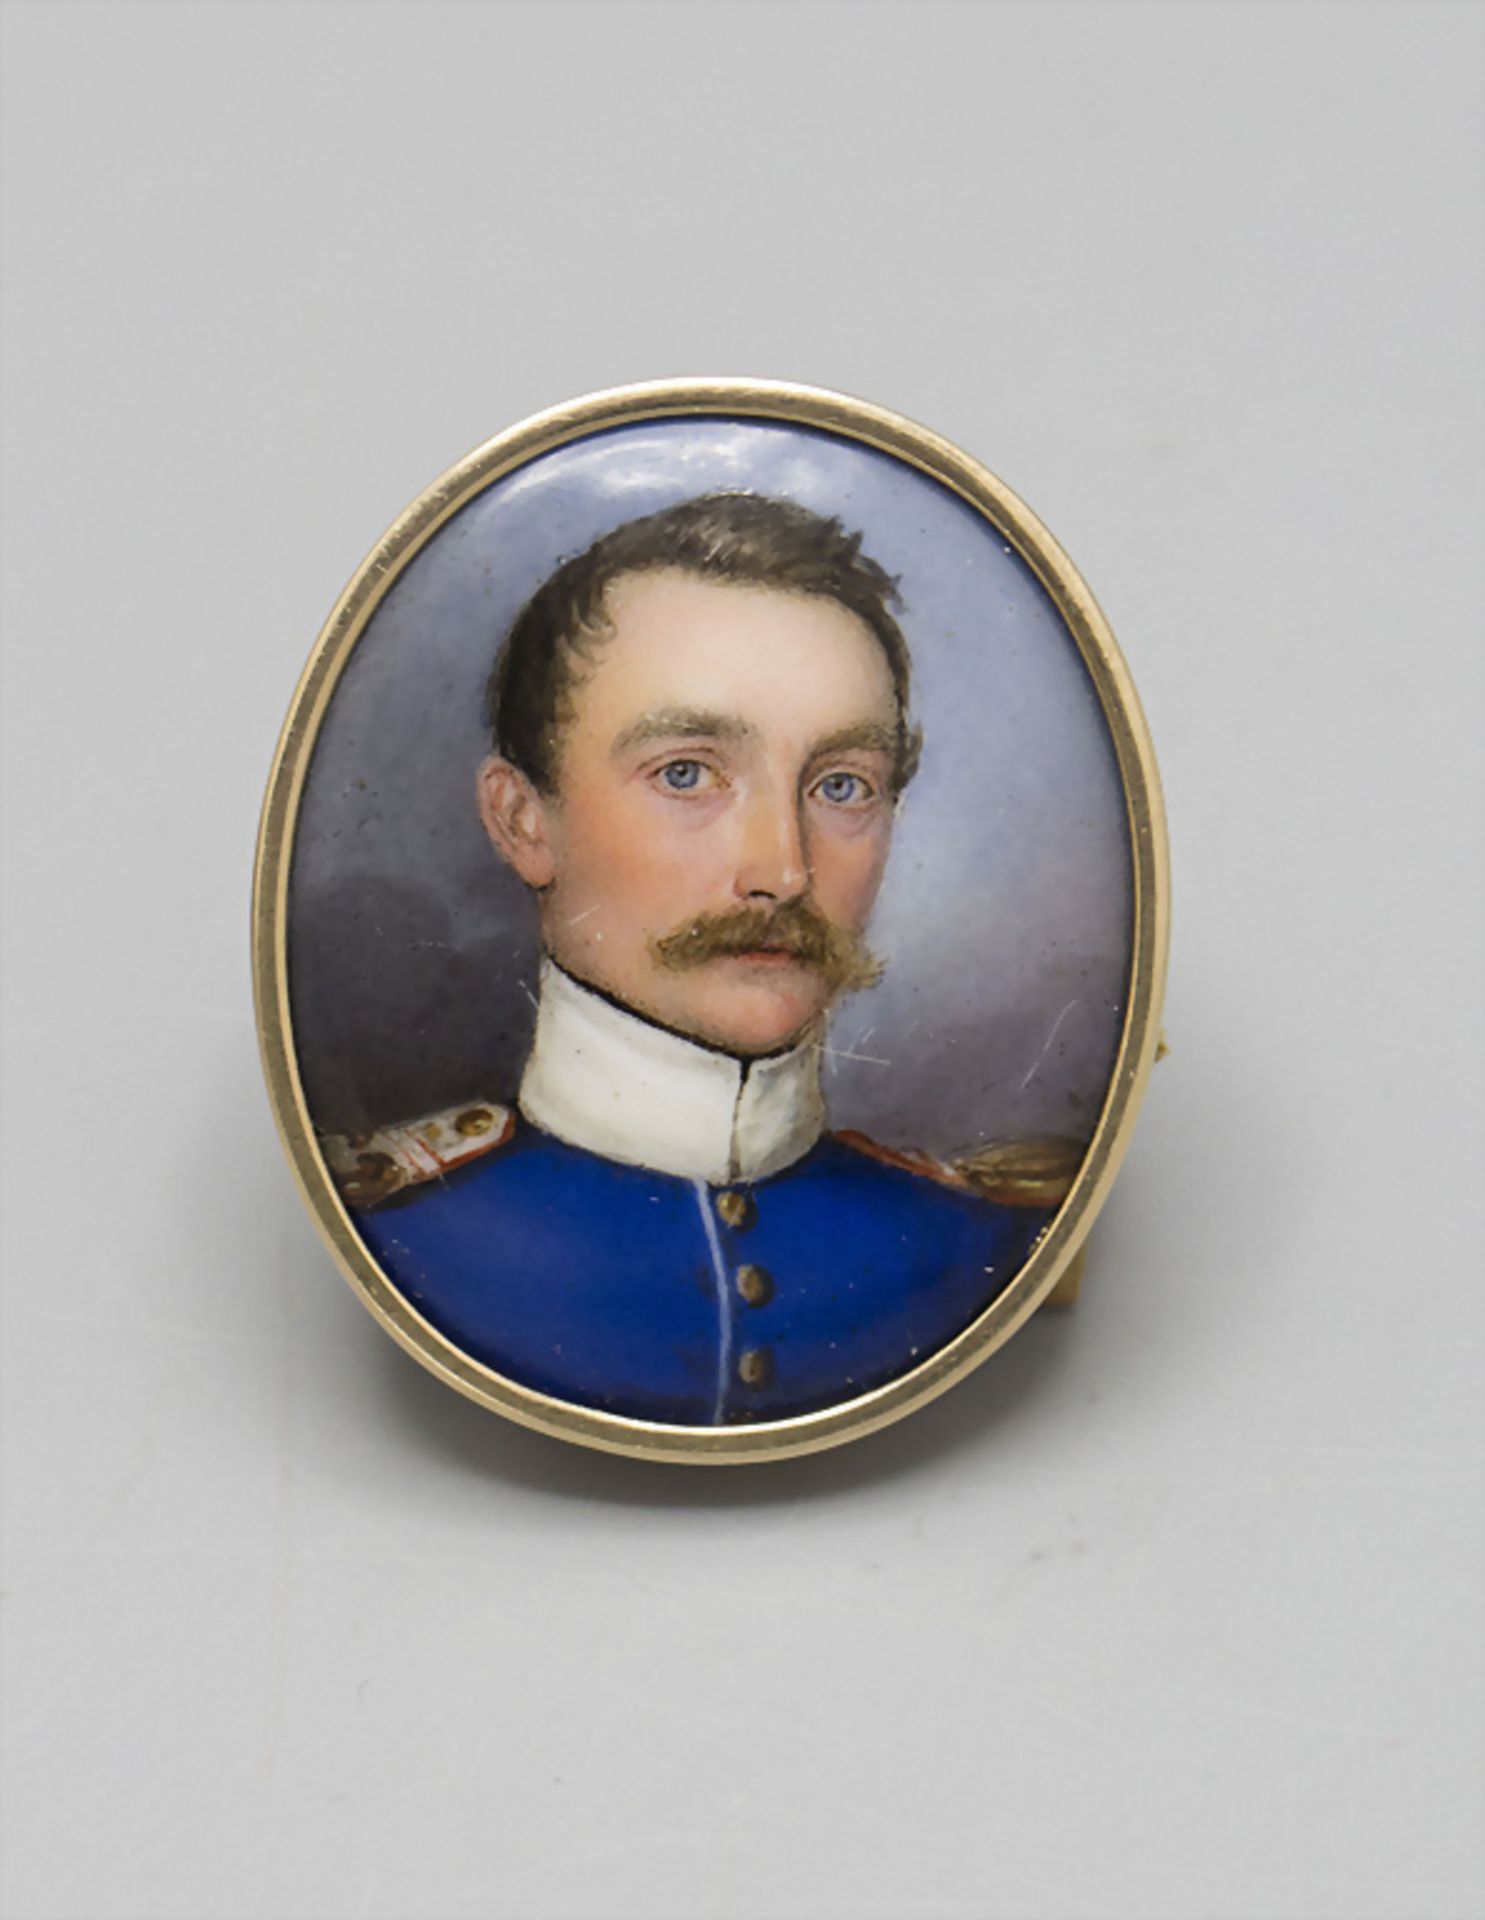 Empire Miniatur 'Offizier' / An Empire miniature portrait of an officer, um 1800